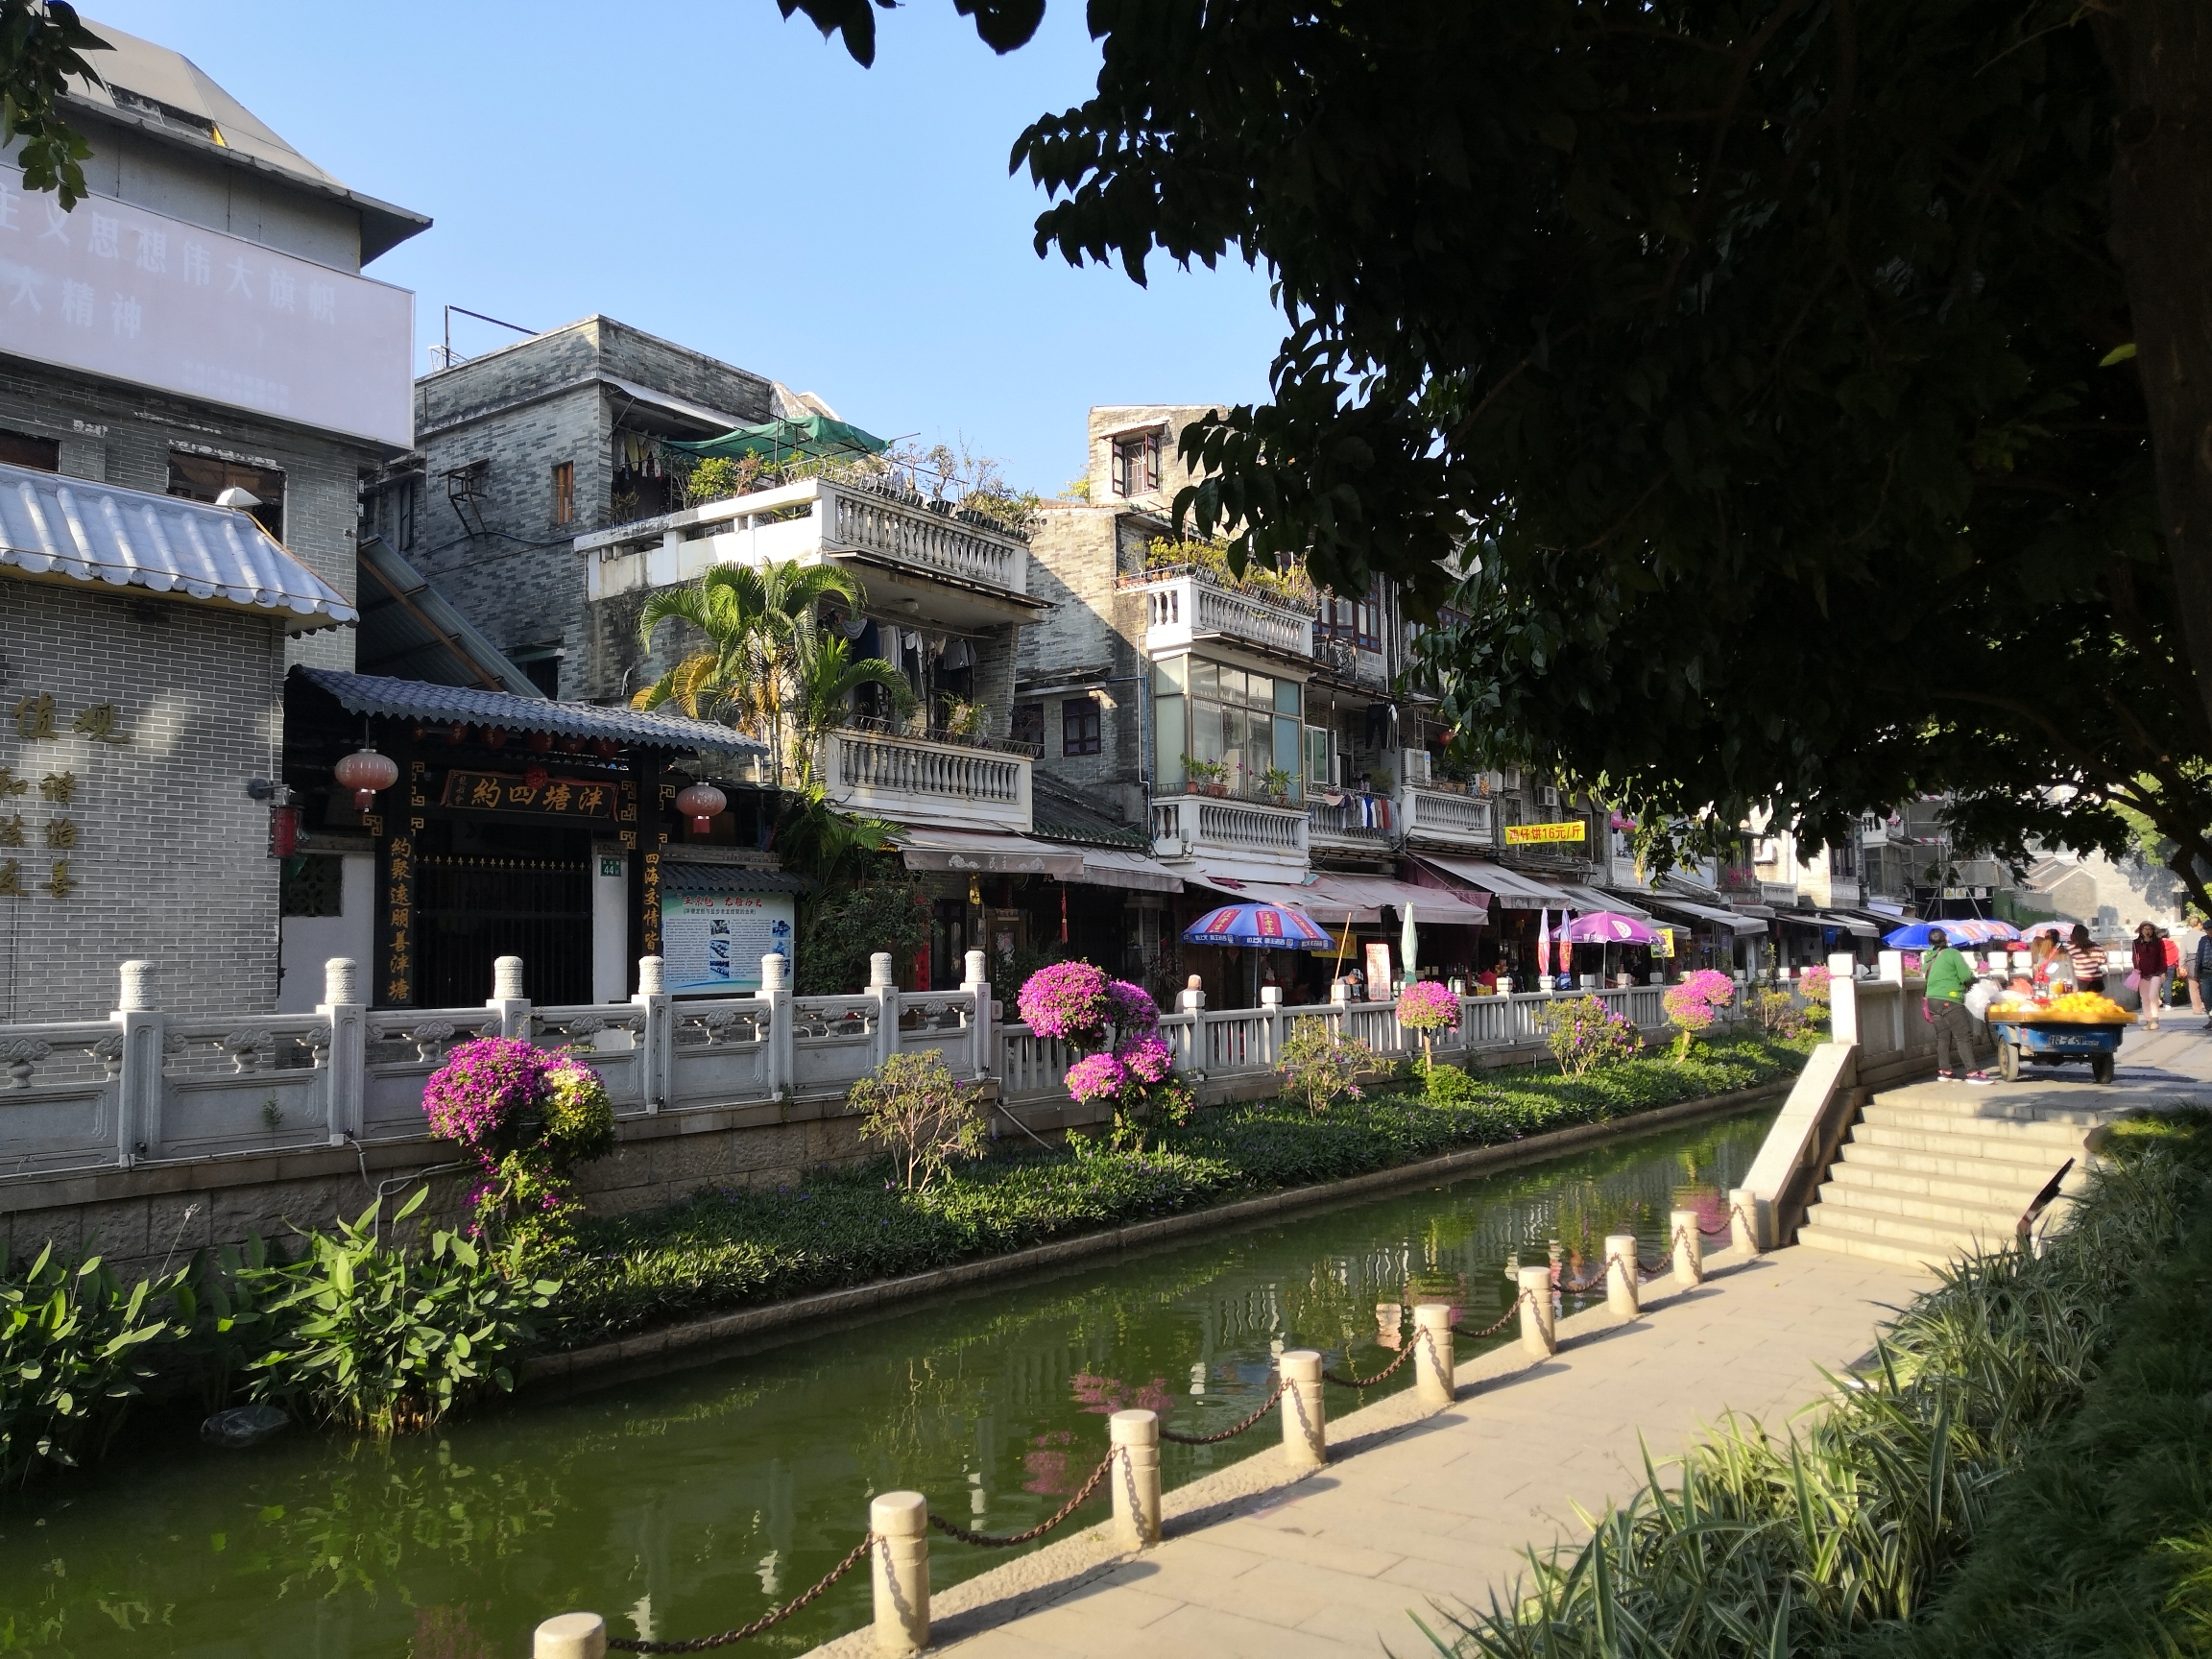 荔枝湾,荔枝涌,全名荔枝湾涌,是位于广州市荔湾区的一处著名景区